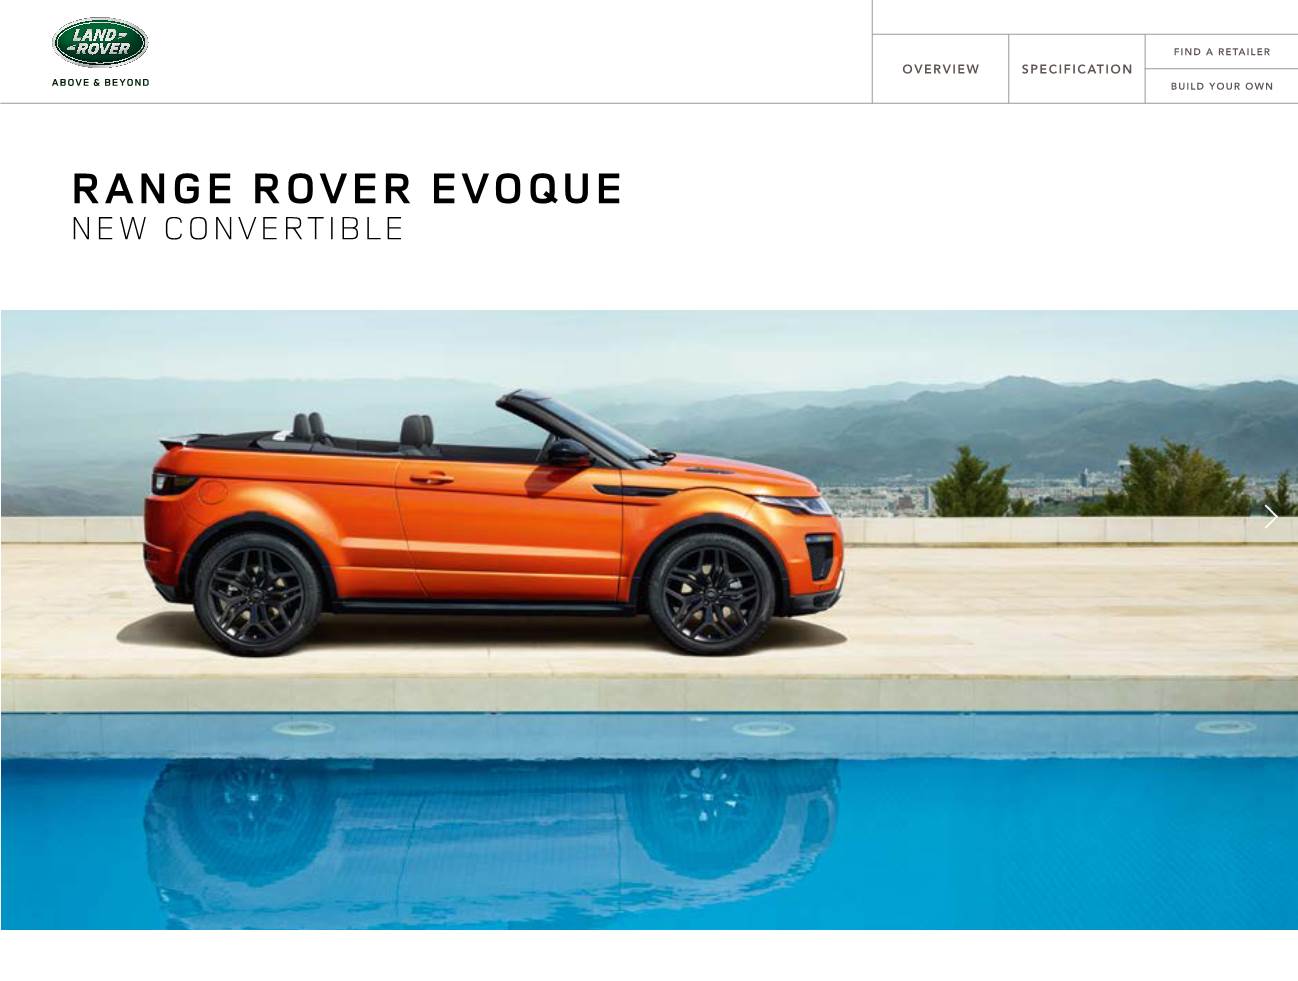 Range Rover Evoque New Convertible Range Rover Evoque